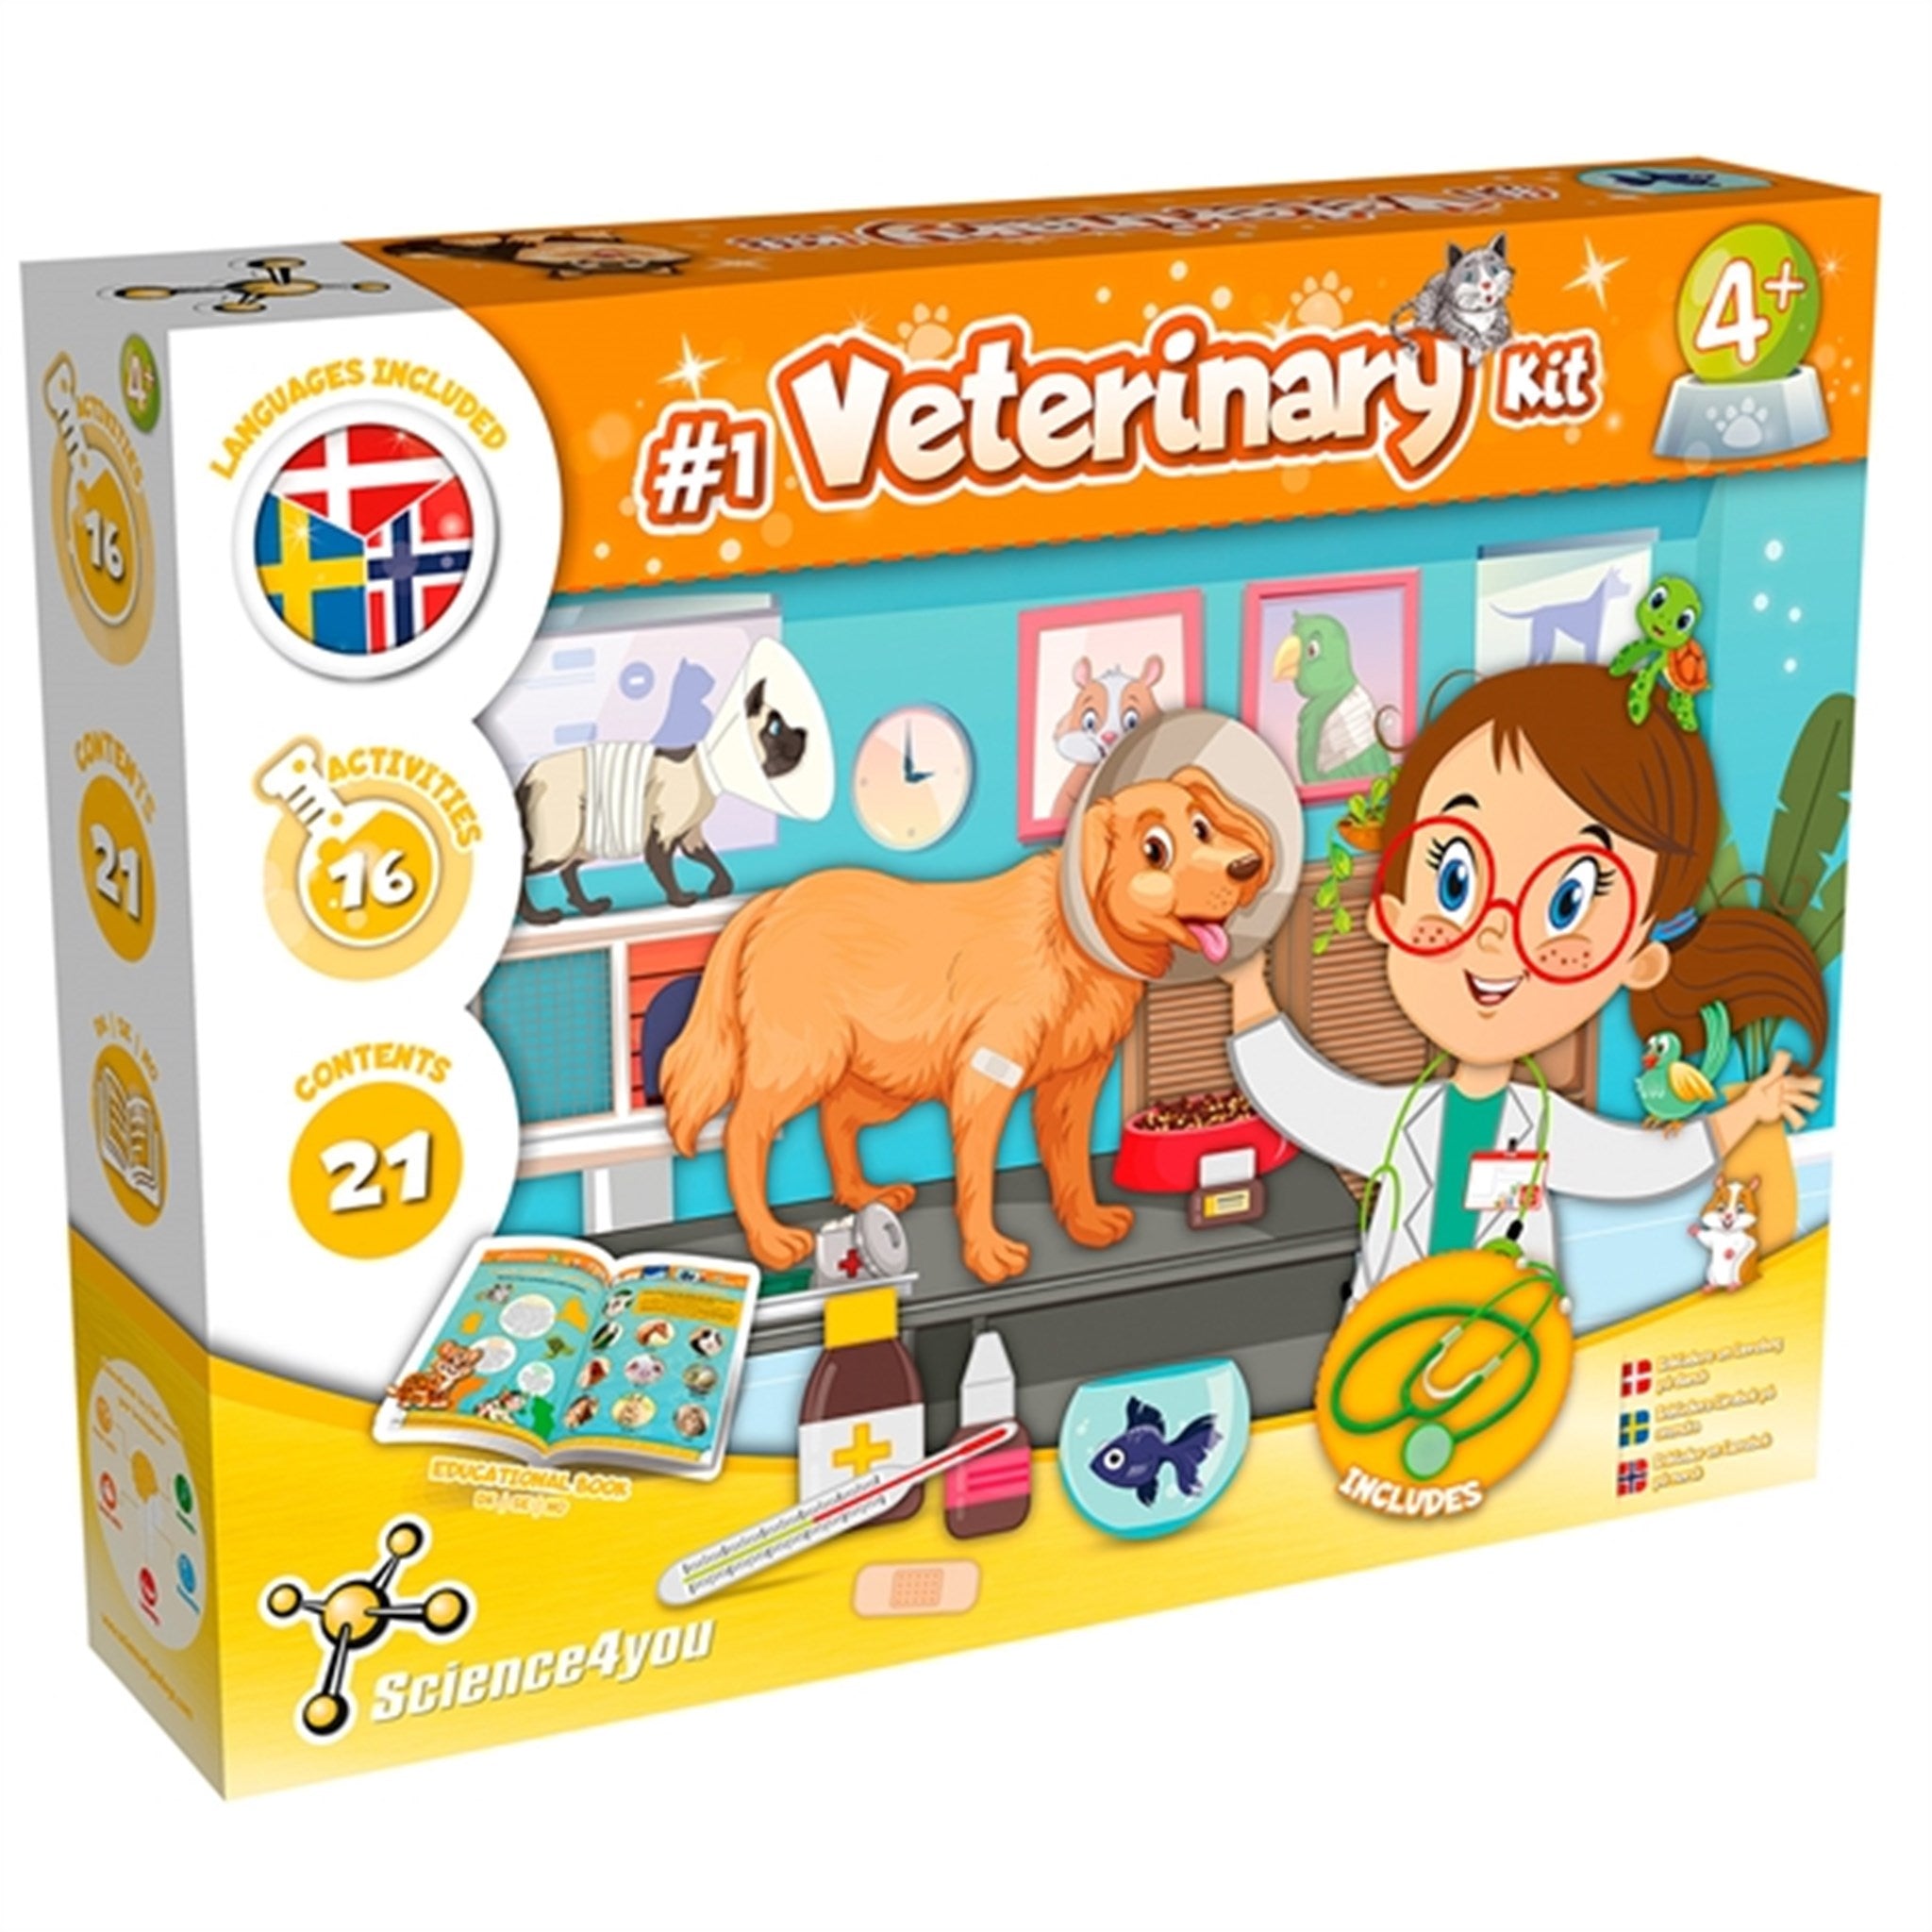 Science4you Veterinary Kit